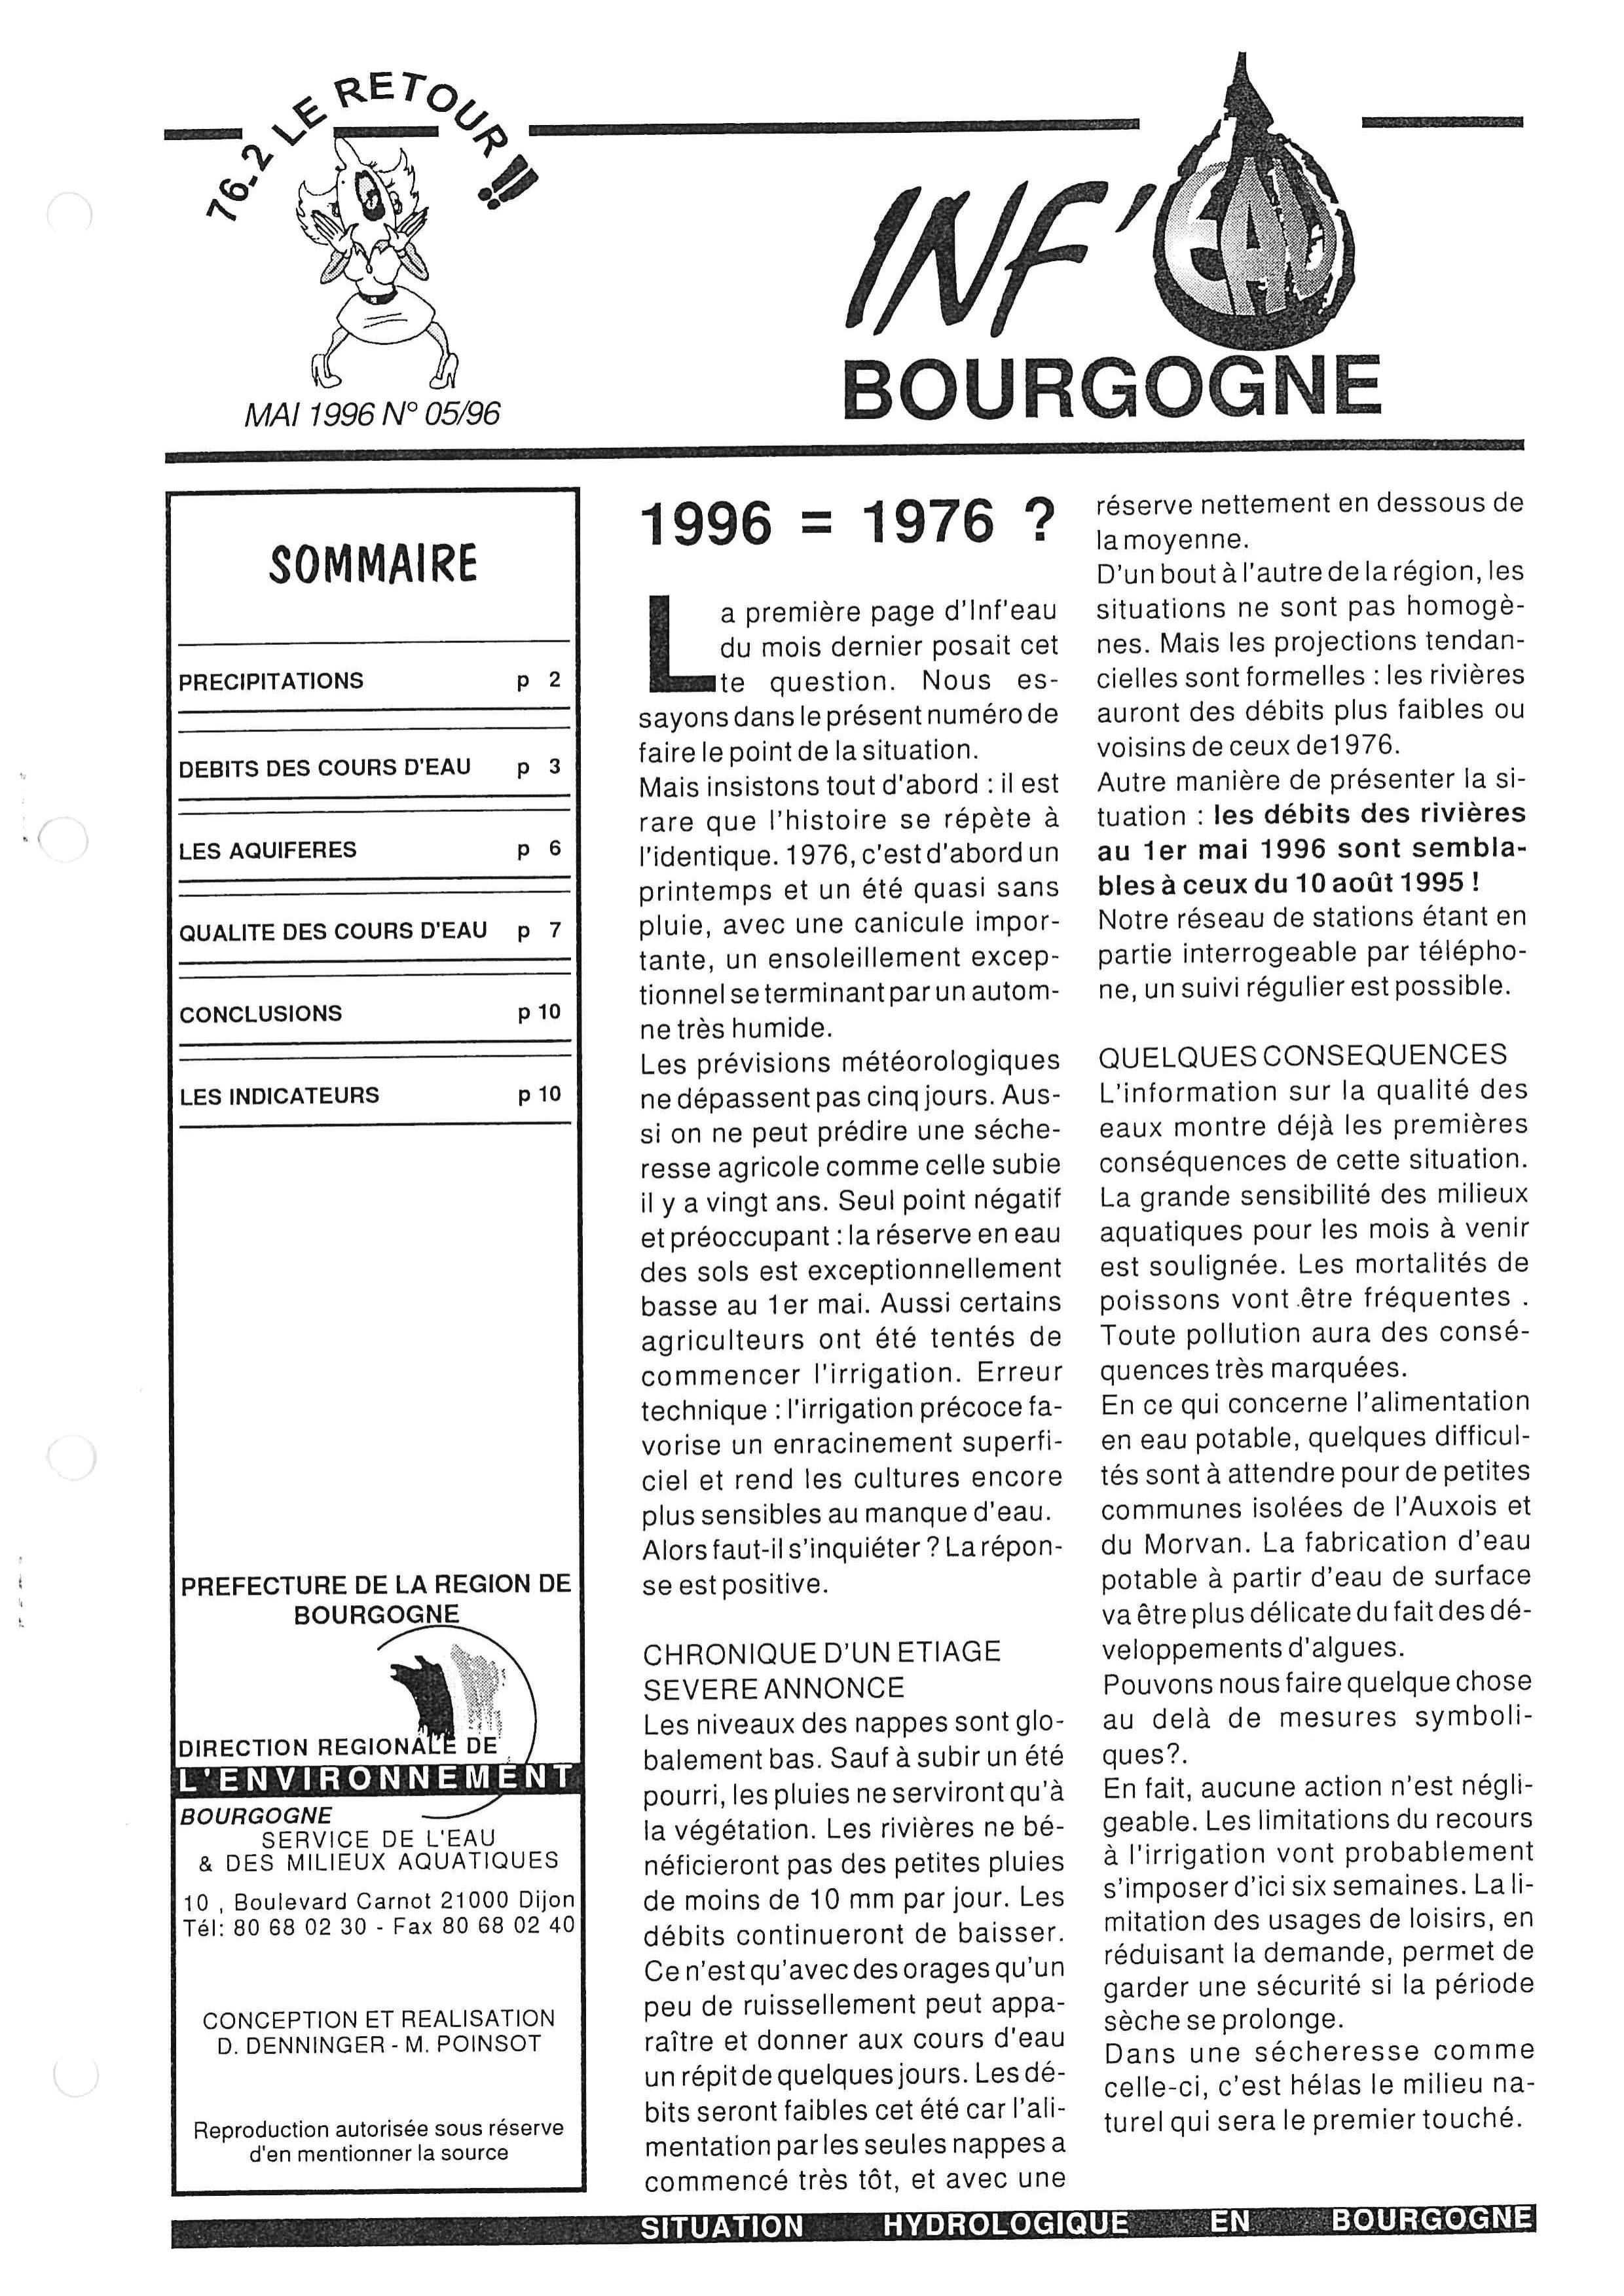 Bulletin hydrologique du mois d'avril 1996